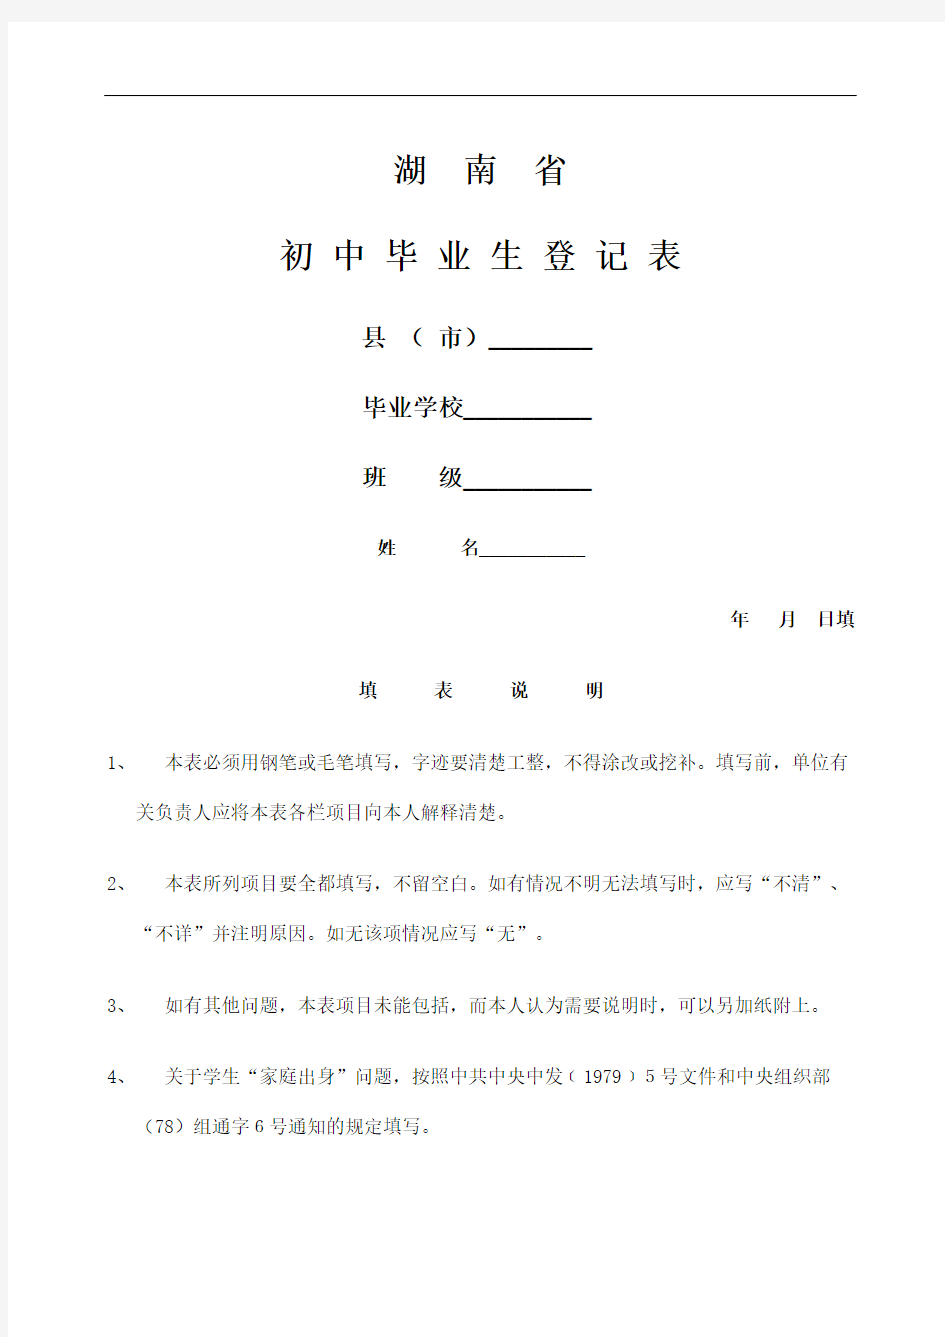 湖南省毕业生登记表修复版定稿版